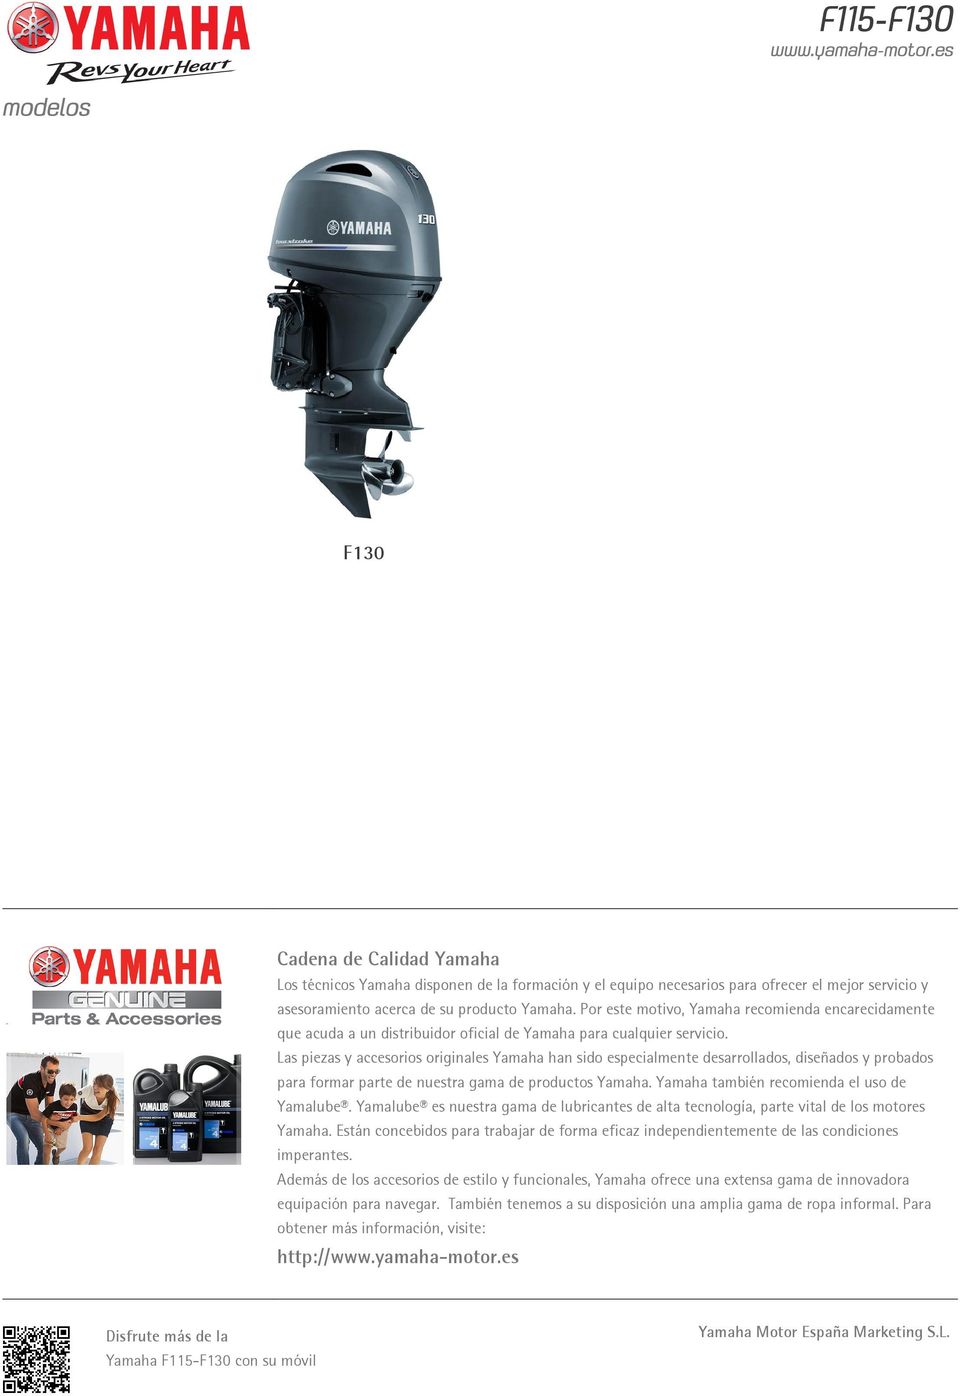 Las piezas y accesorios originales Yamaha han sido especialmente desarrollados, diseñados y probados para formar parte de nuestra gama de productos Yamaha.